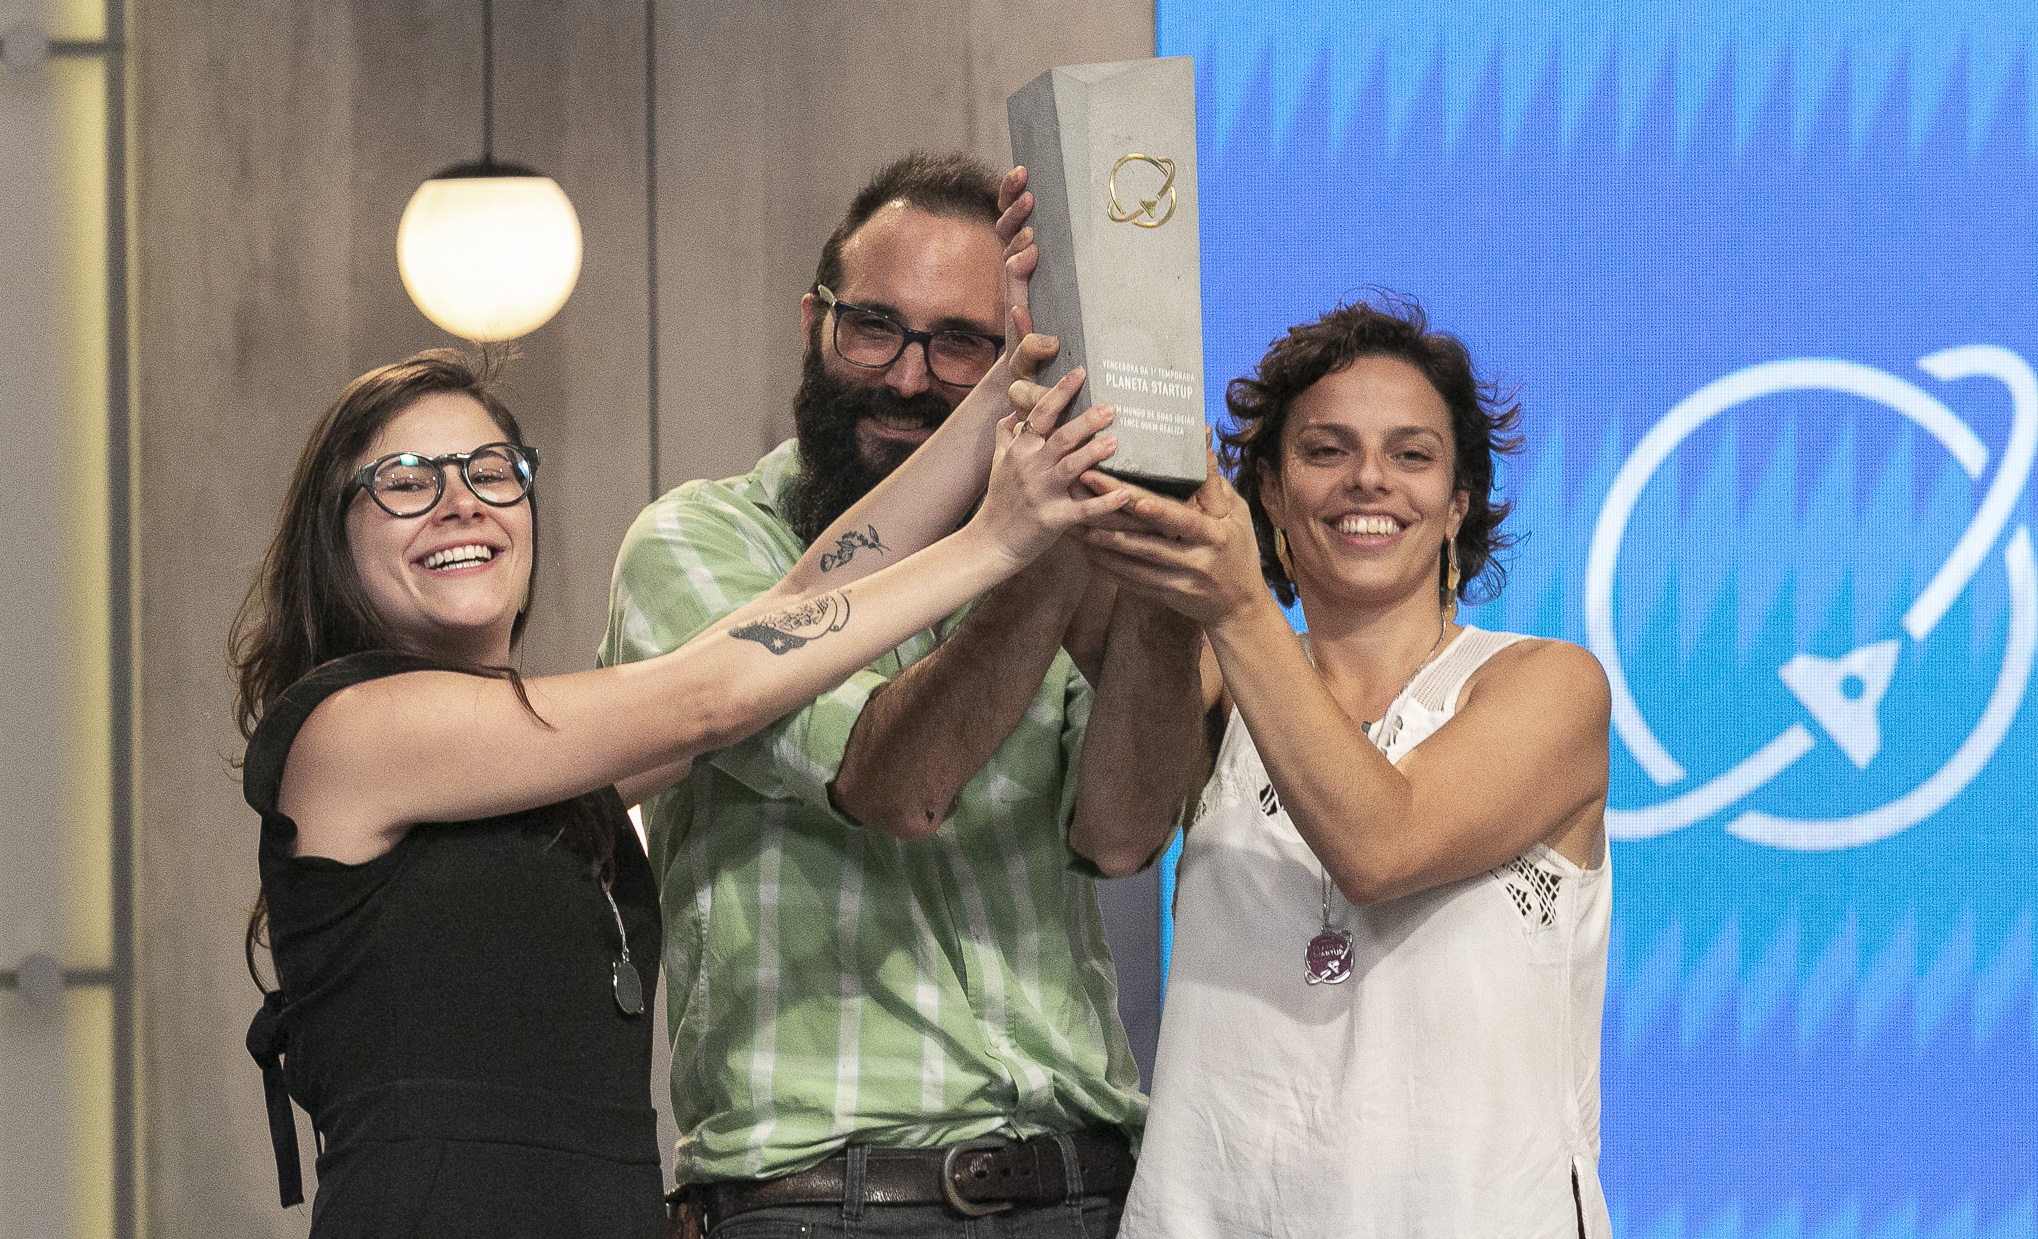 duLocal conquista primeiro troféu do “Planeta Startup”